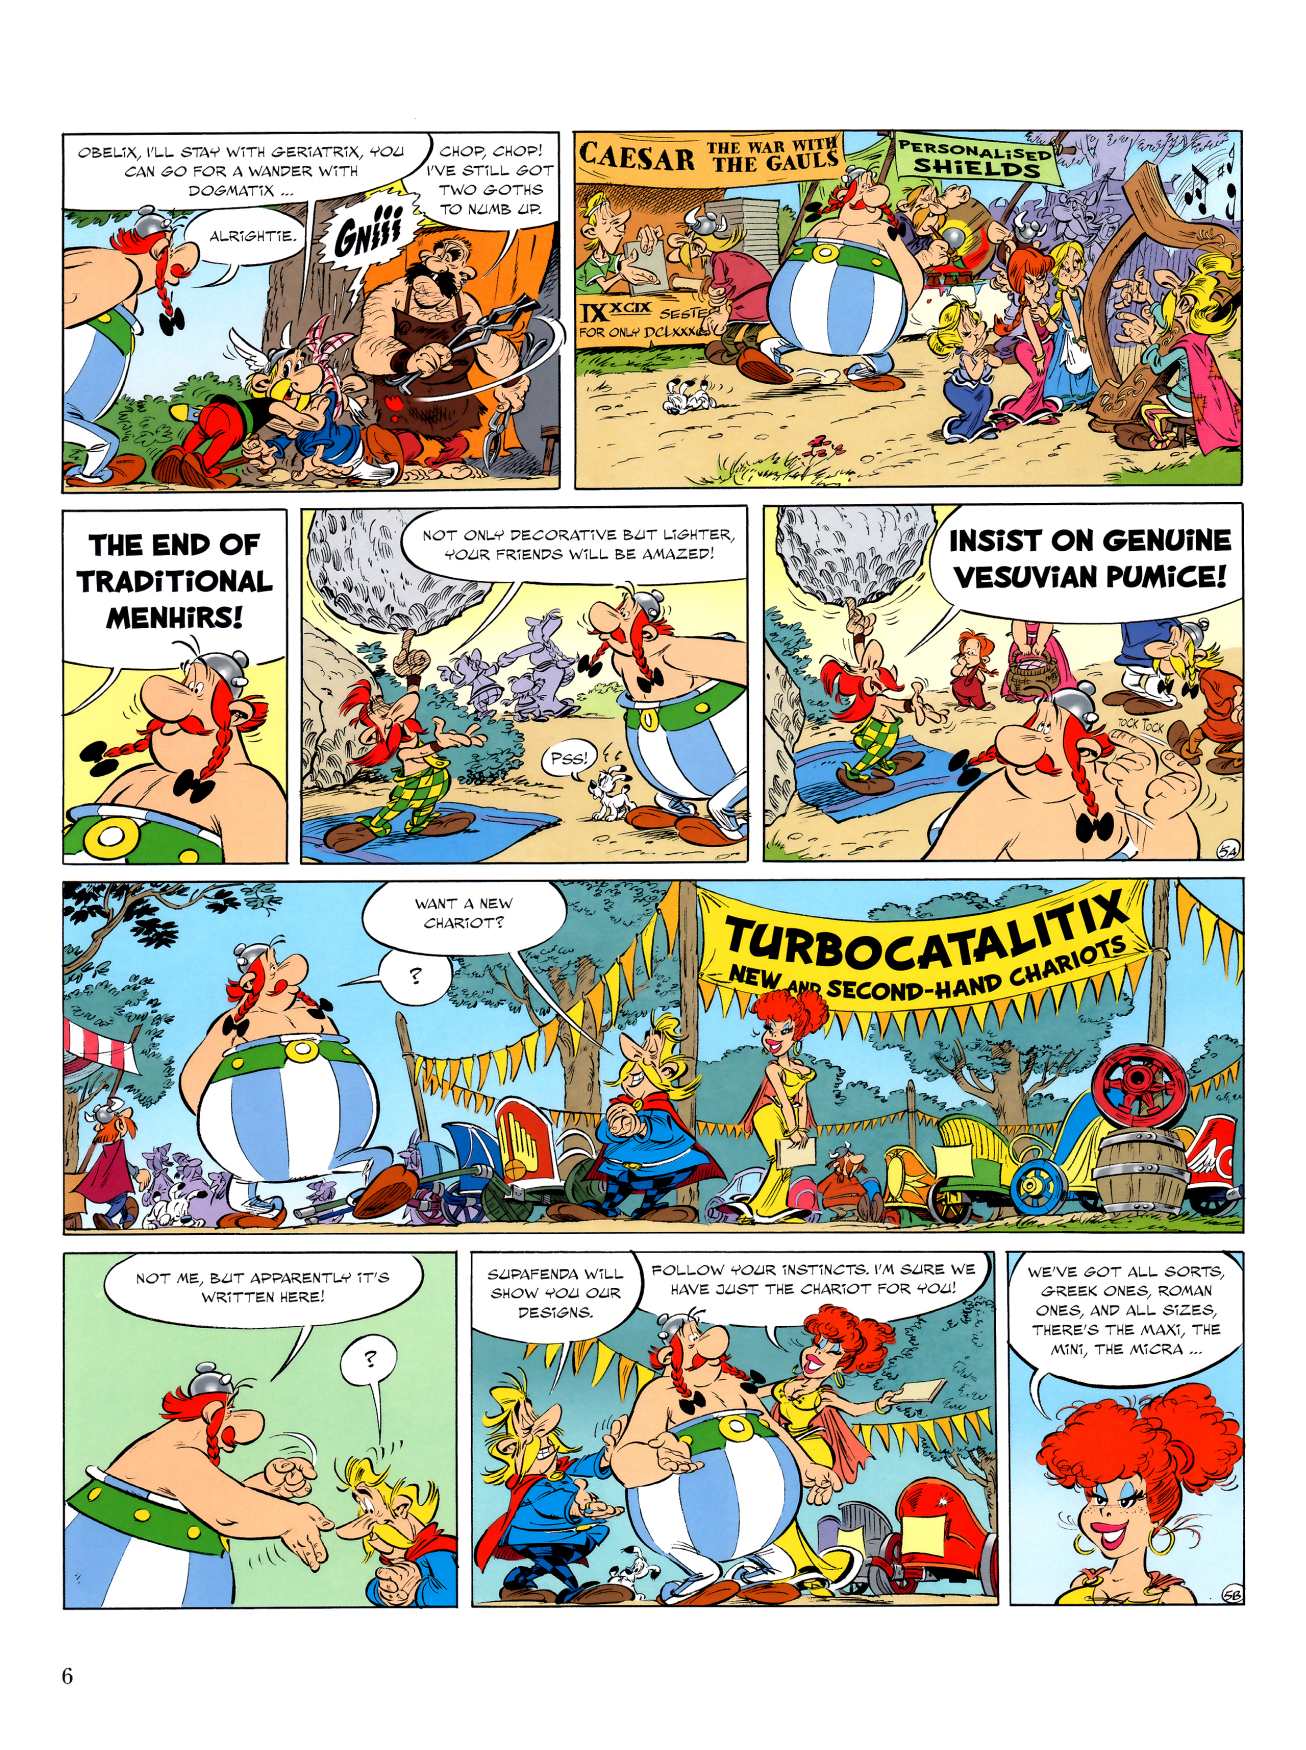 Bewustzijn Afgeschaft Politieagent Read Comics Online Free - Asterix Comic Book Issue #043 - Page 7